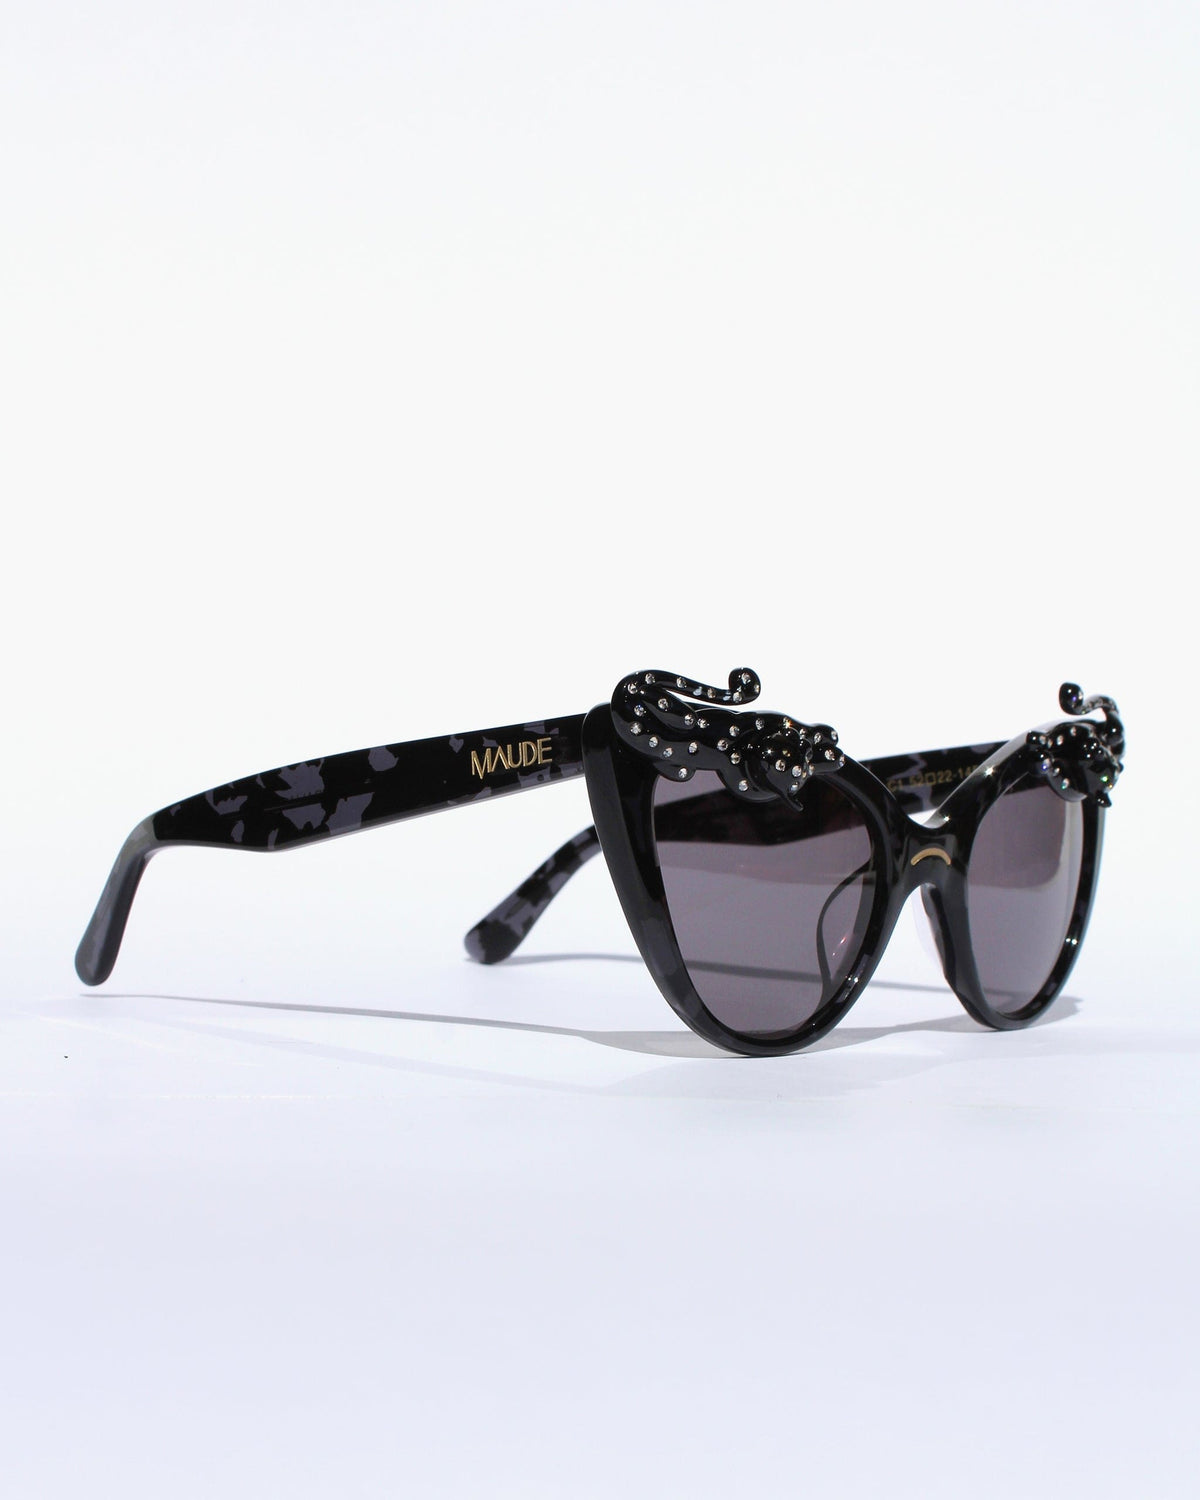 Black Cat Sunglasses